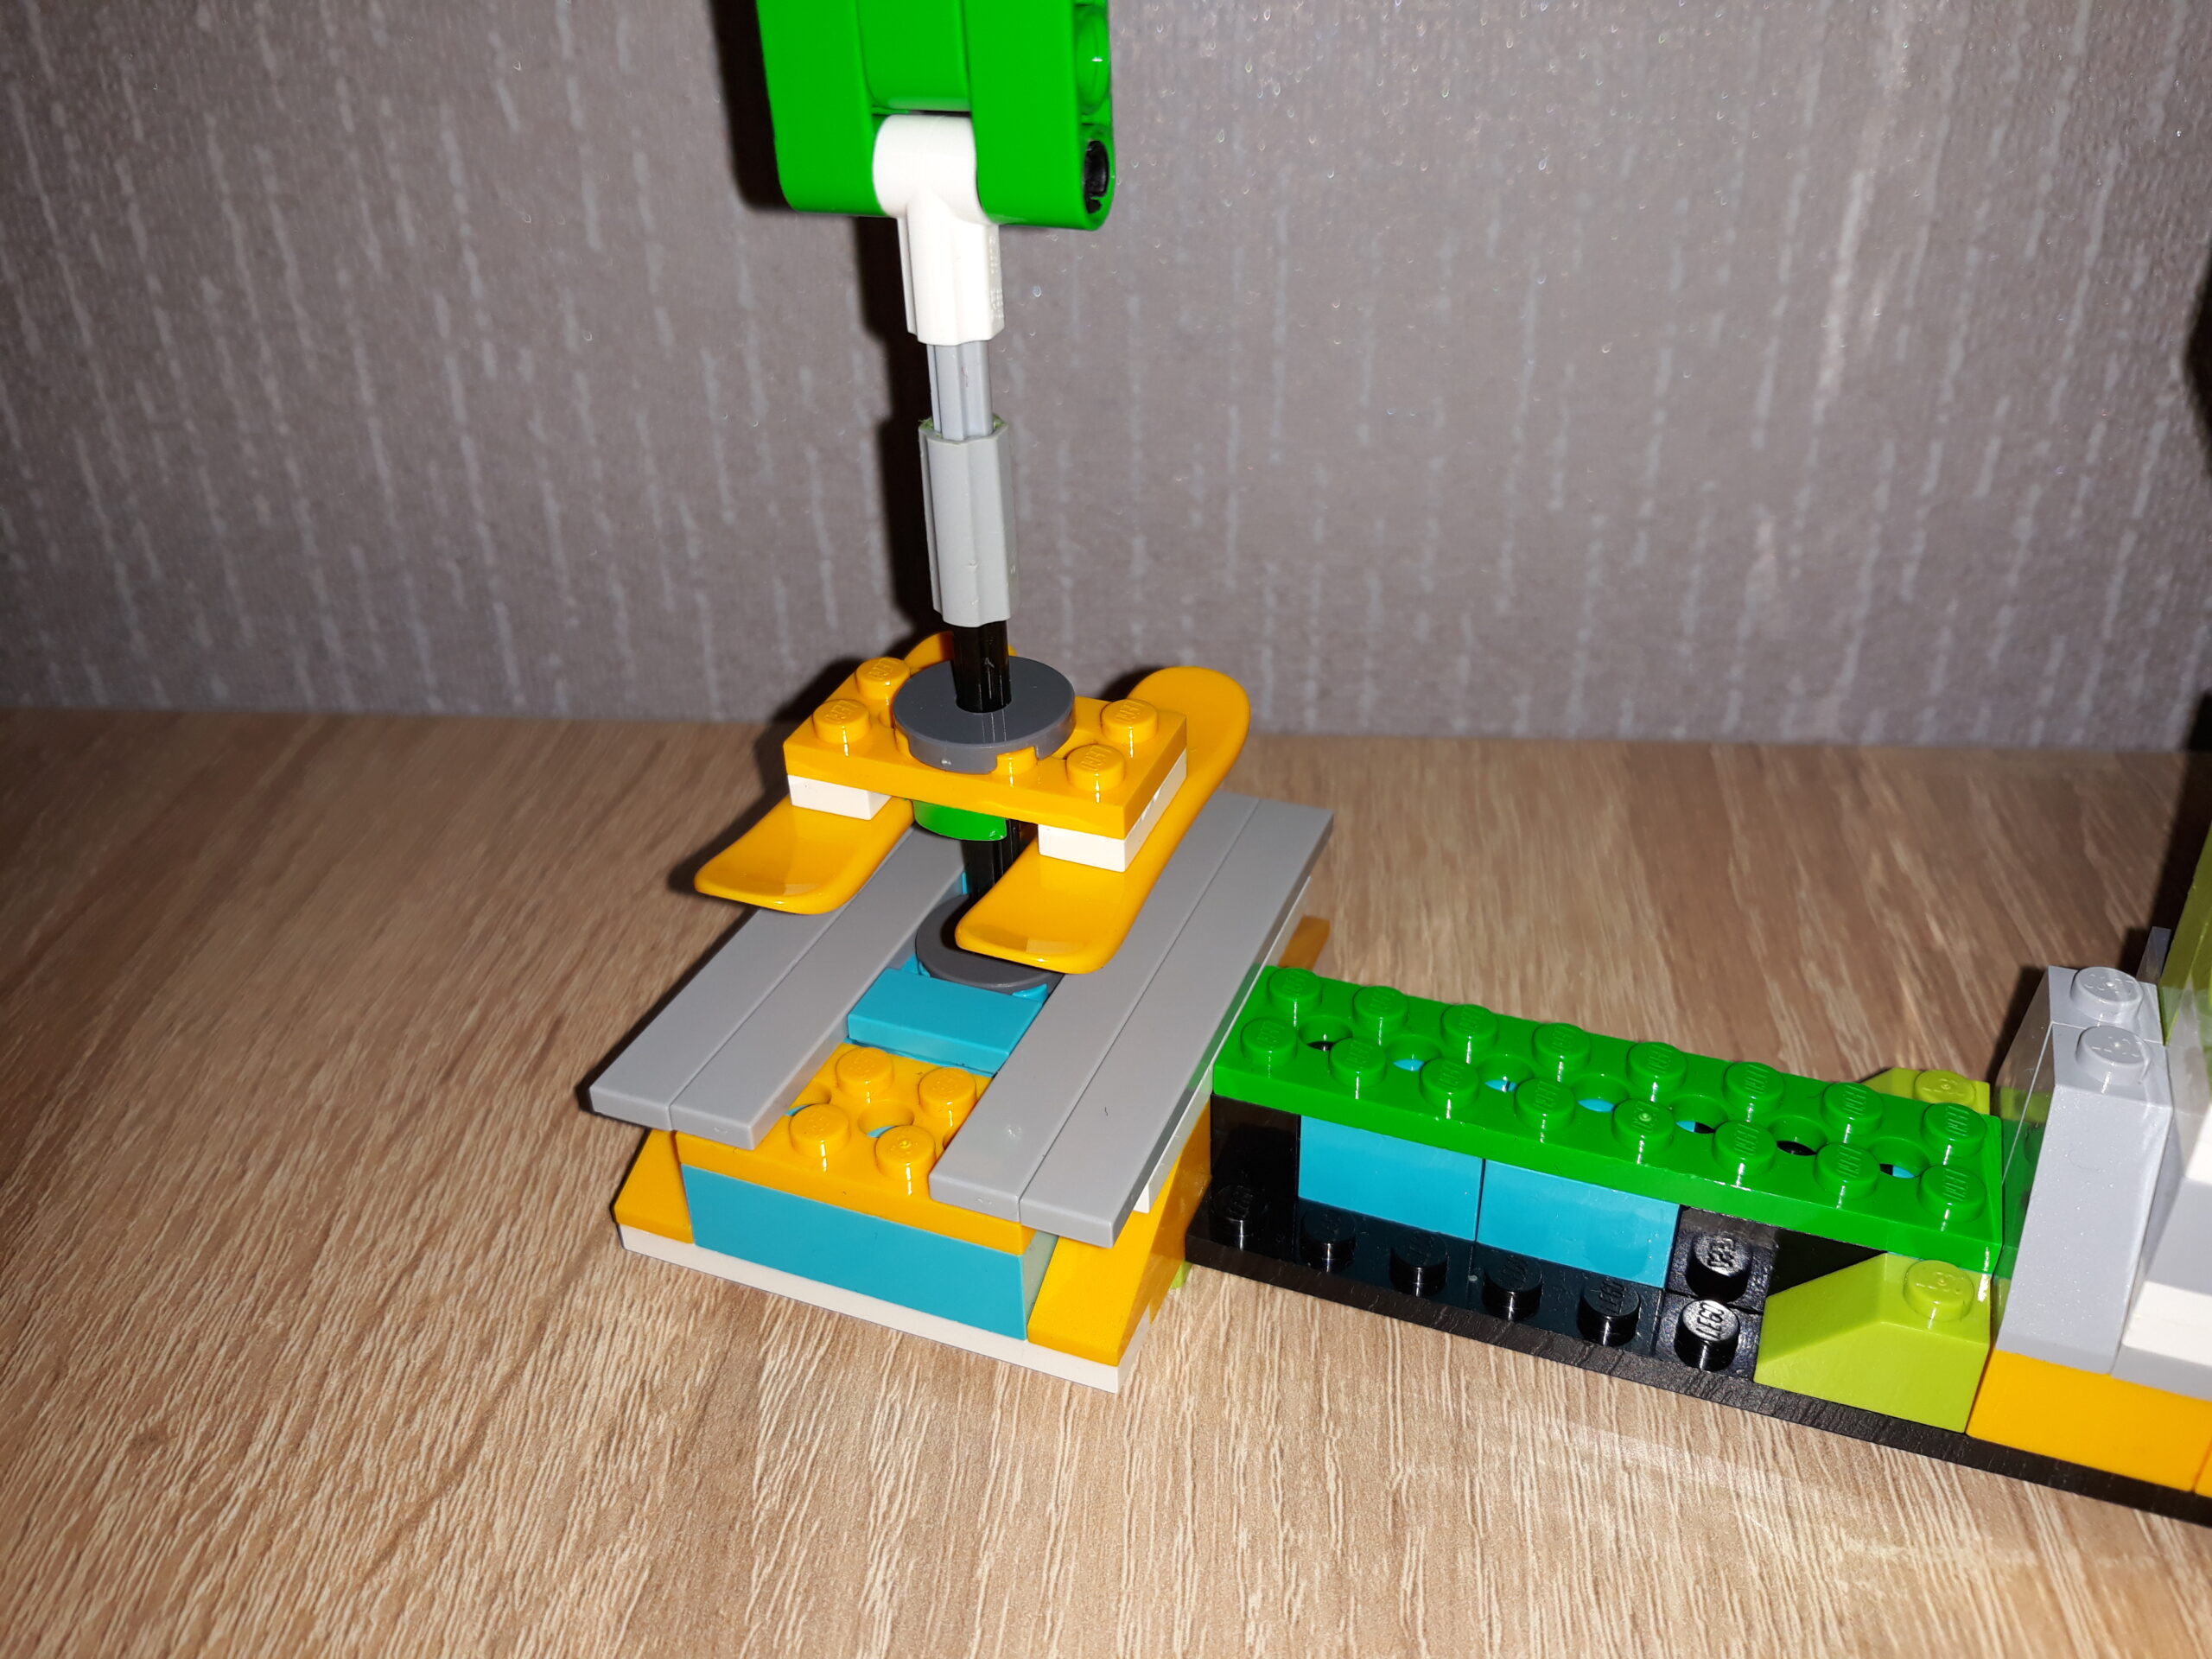 Инструкция по сборке из набора LEGO Education WeDo 2.0 Швейная машинка 3